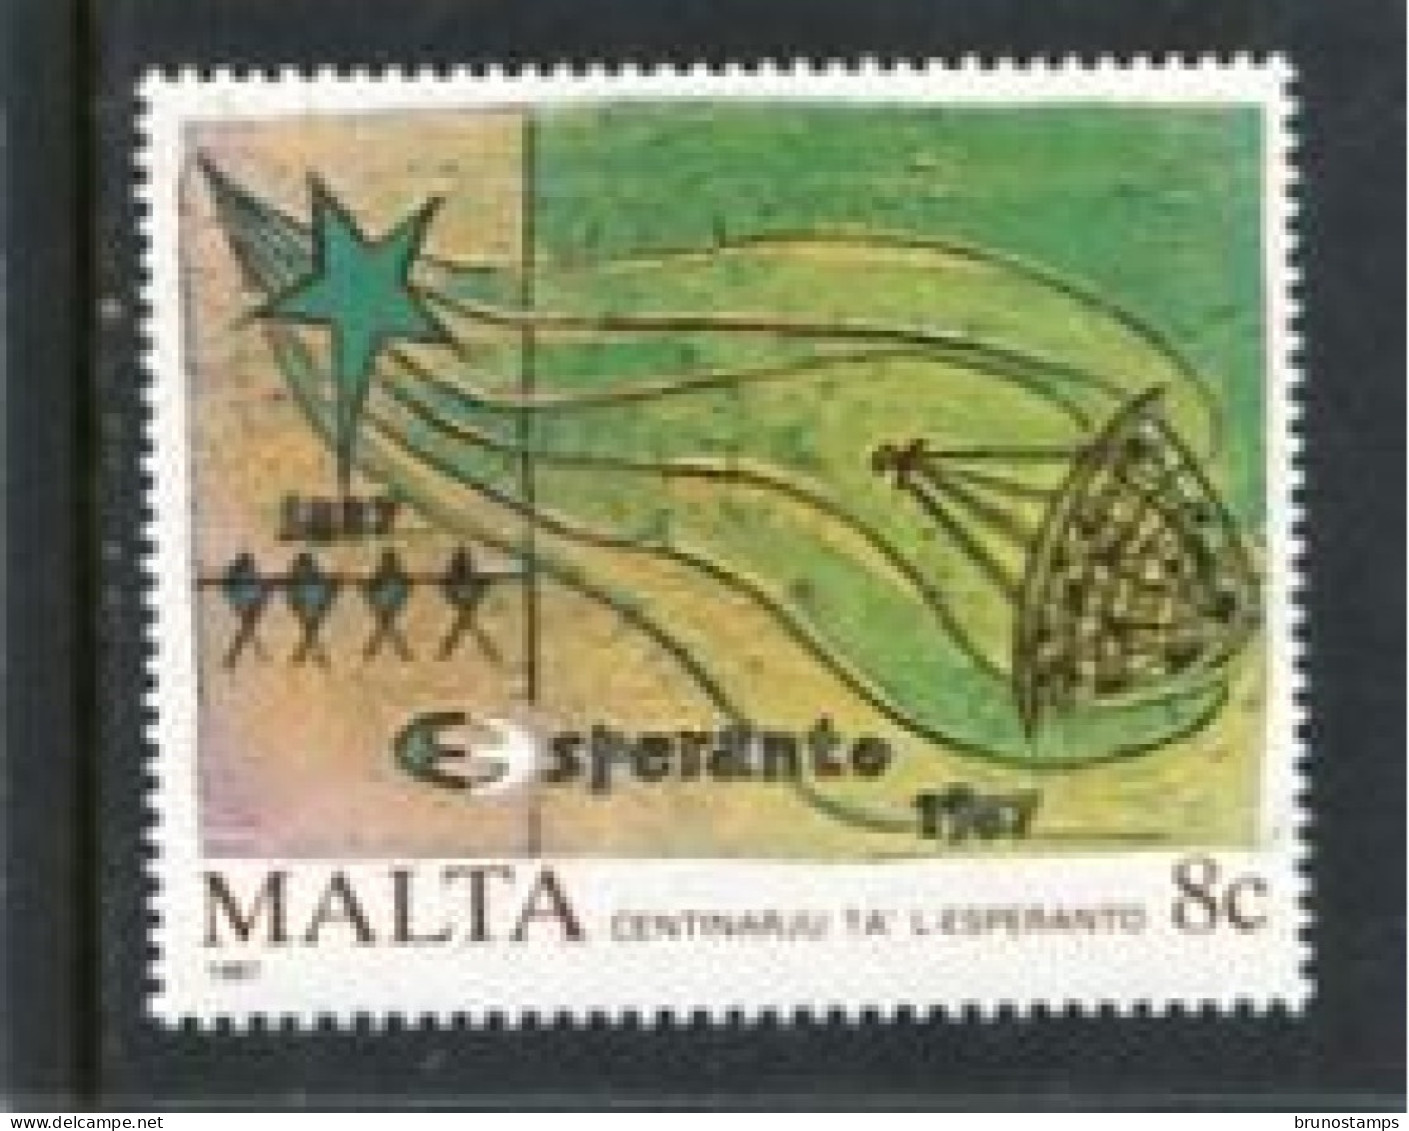 MALTA - 1987  8c  ANNIVERSARIES  MINT NH - Malta